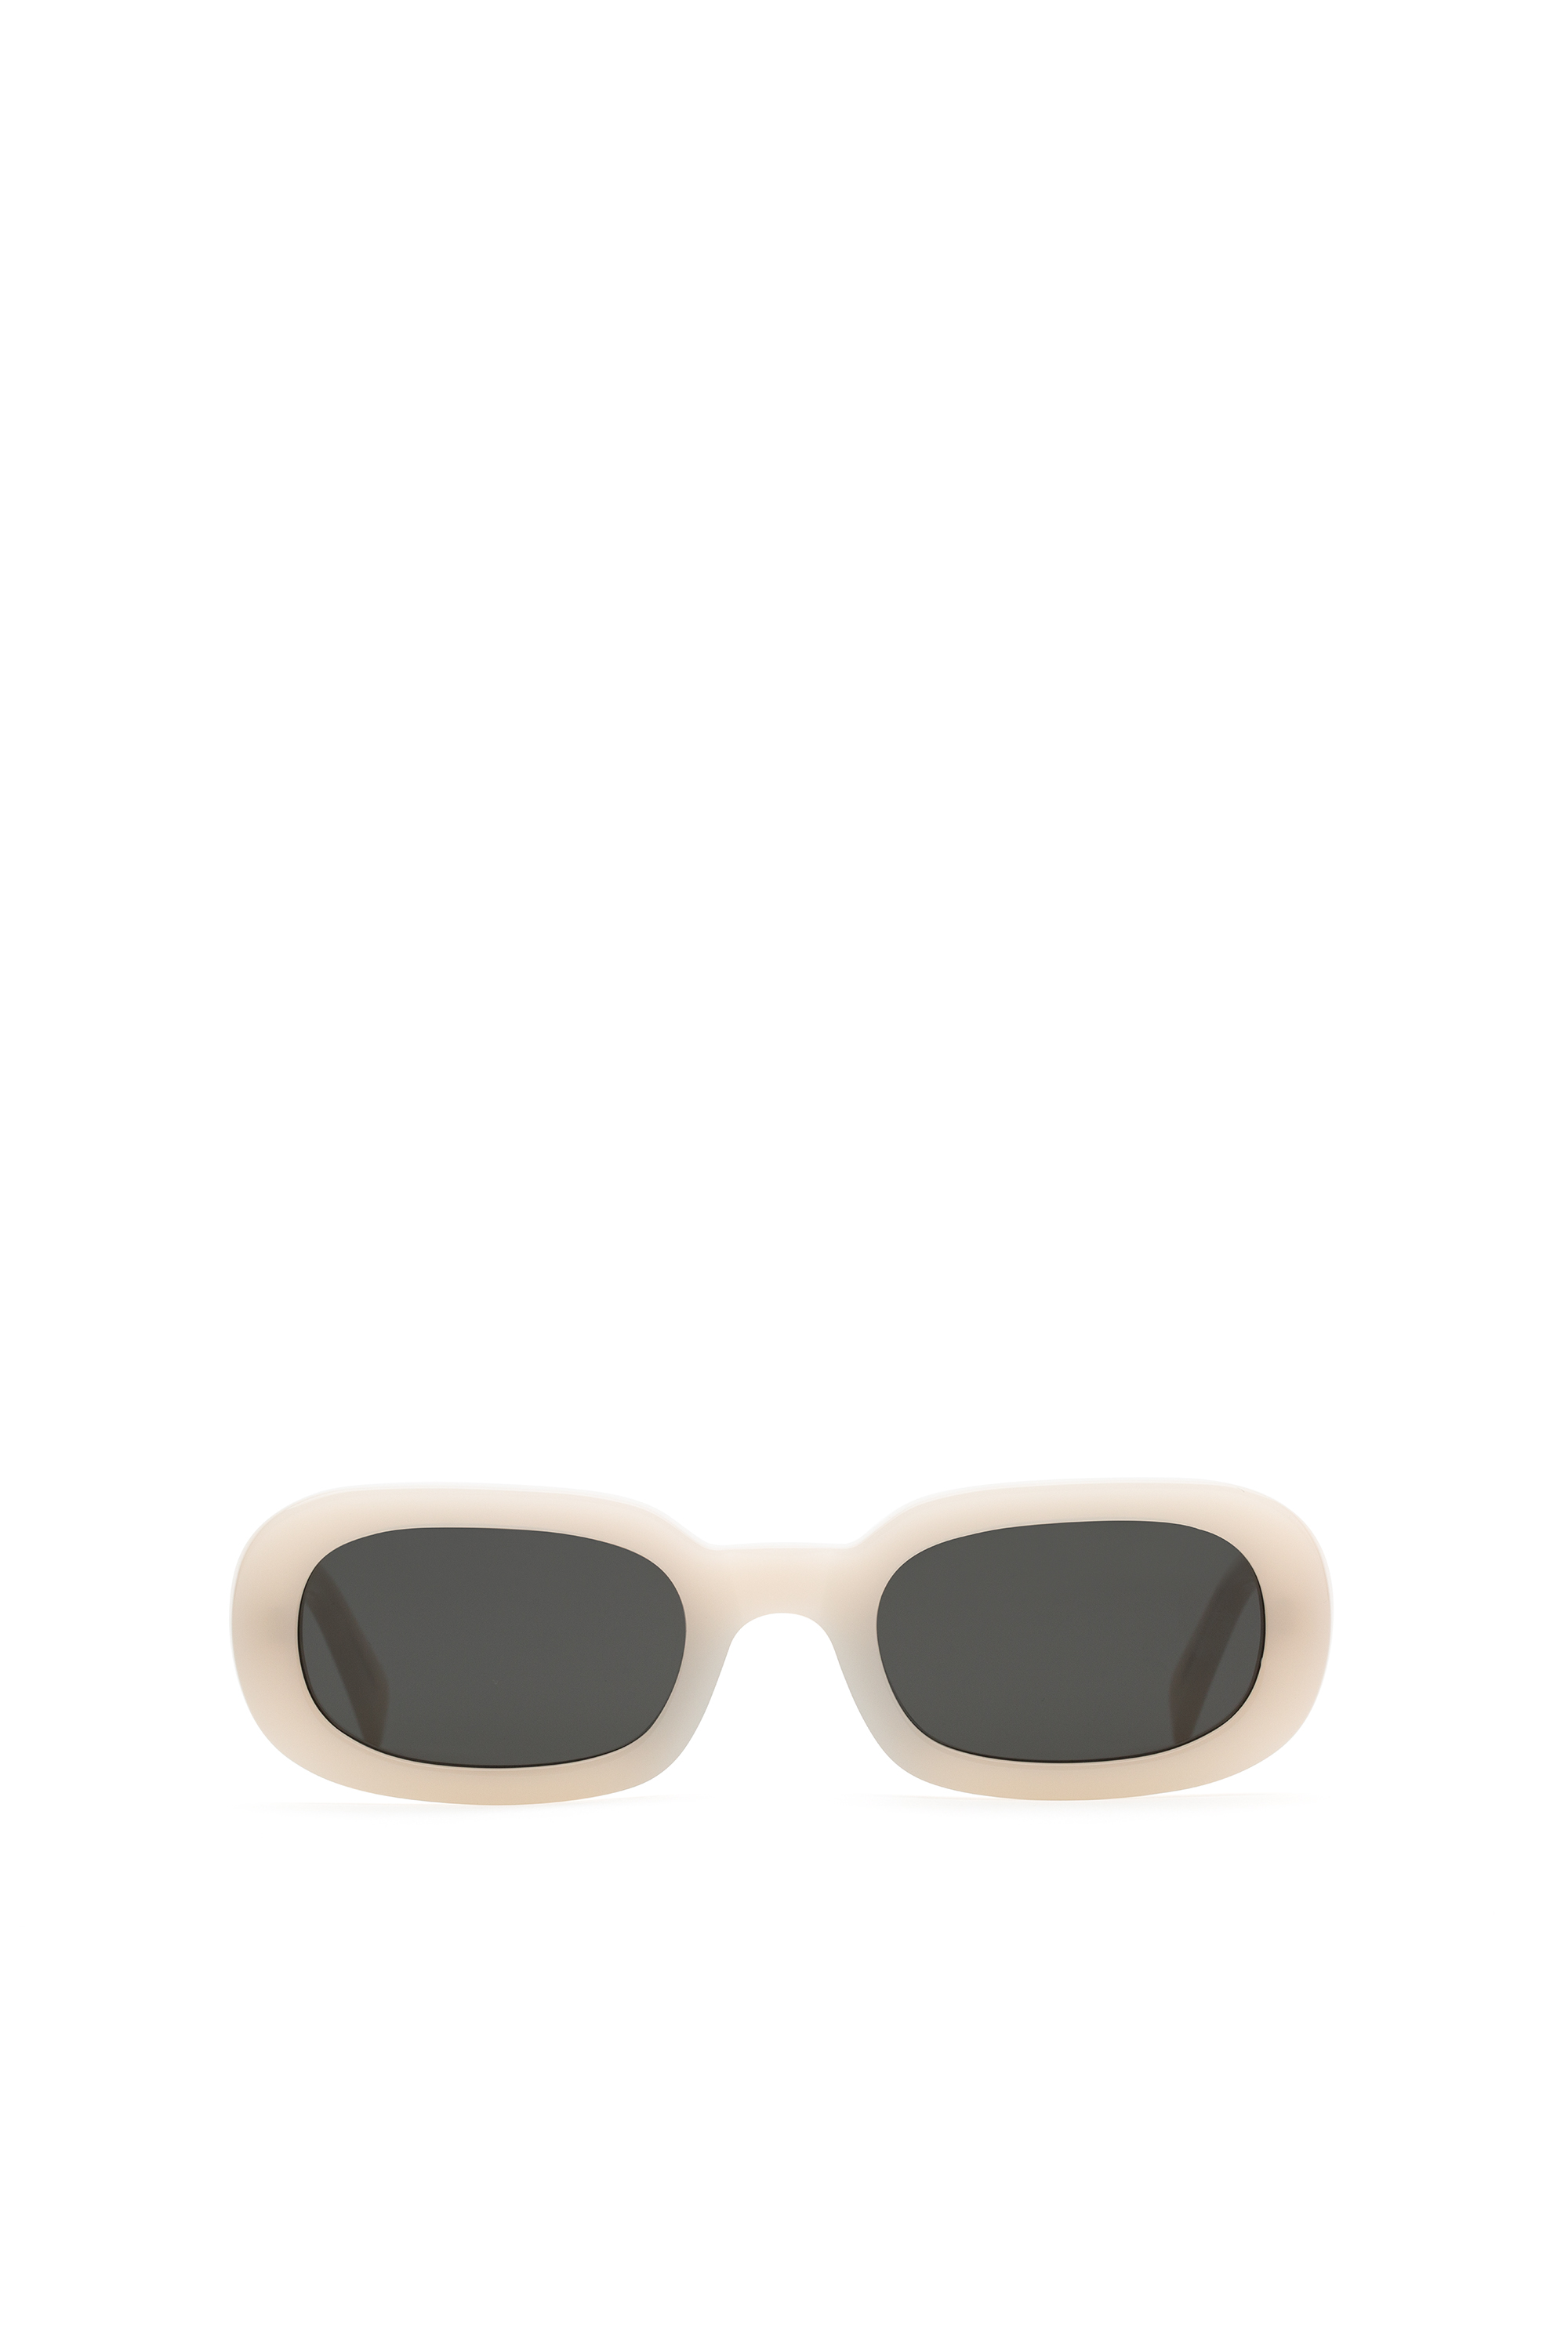 Sunglasses DIESEL en coloris Noir Femme Accessoires homme Lunettes de soleil homme 46 % de réduction 